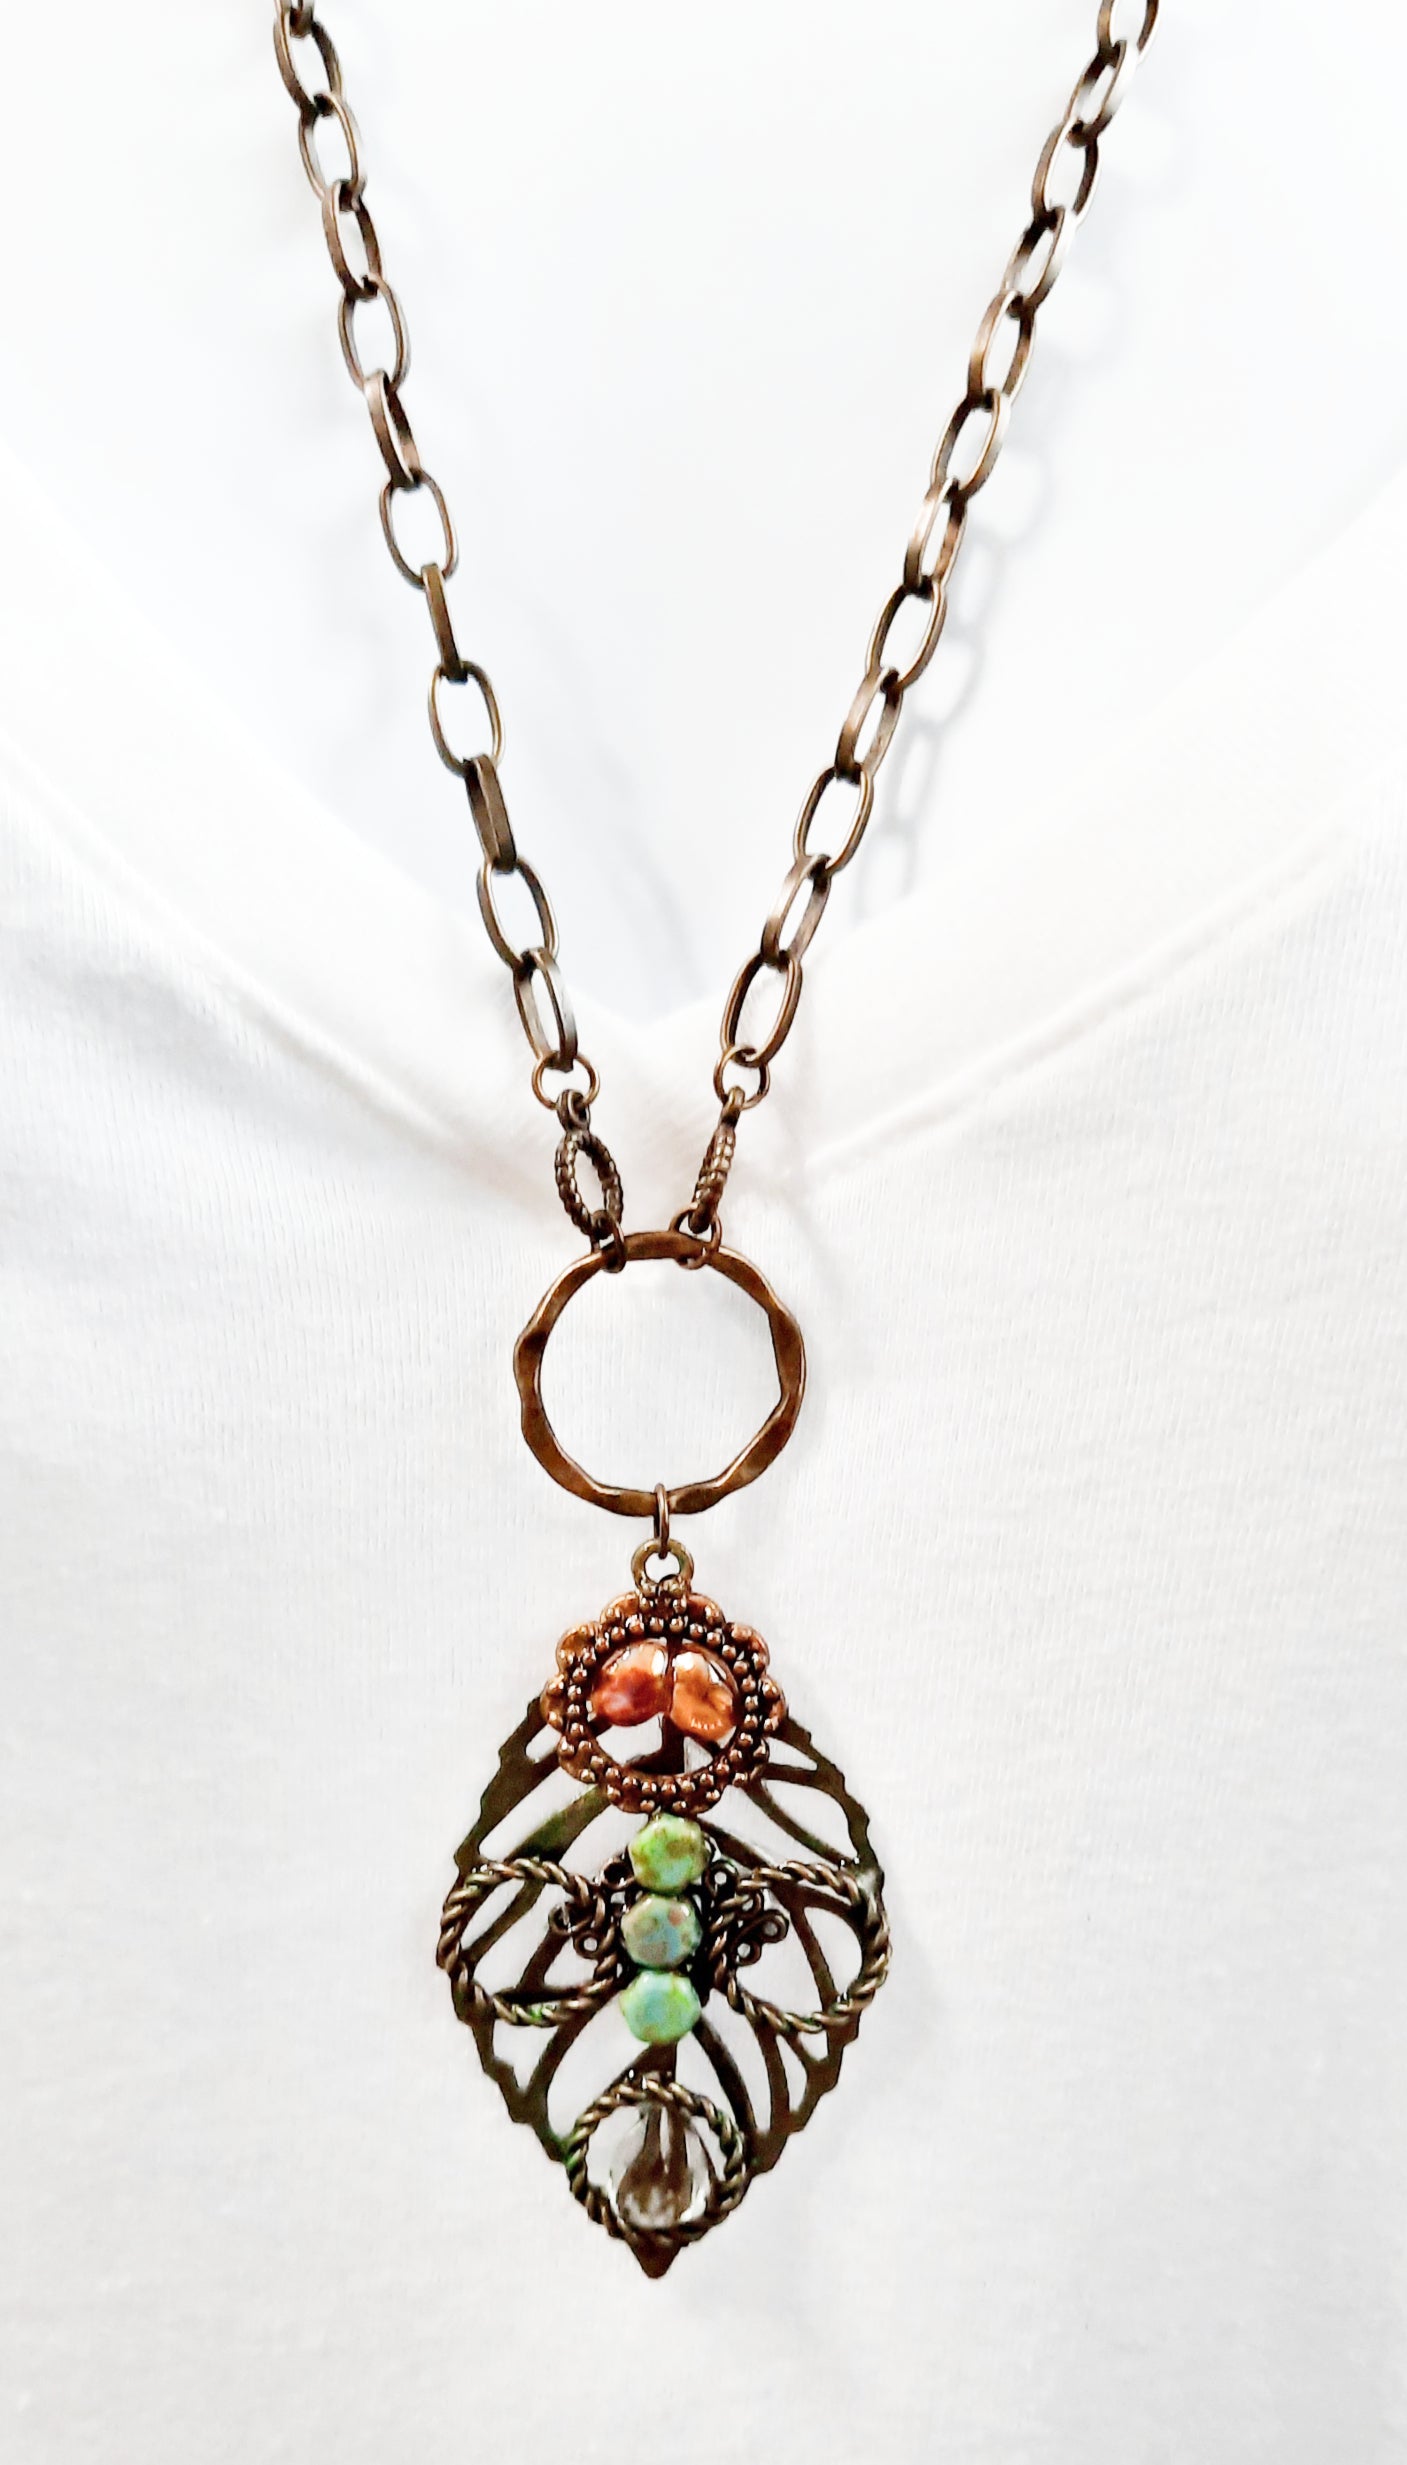 Boho style leaf necklace